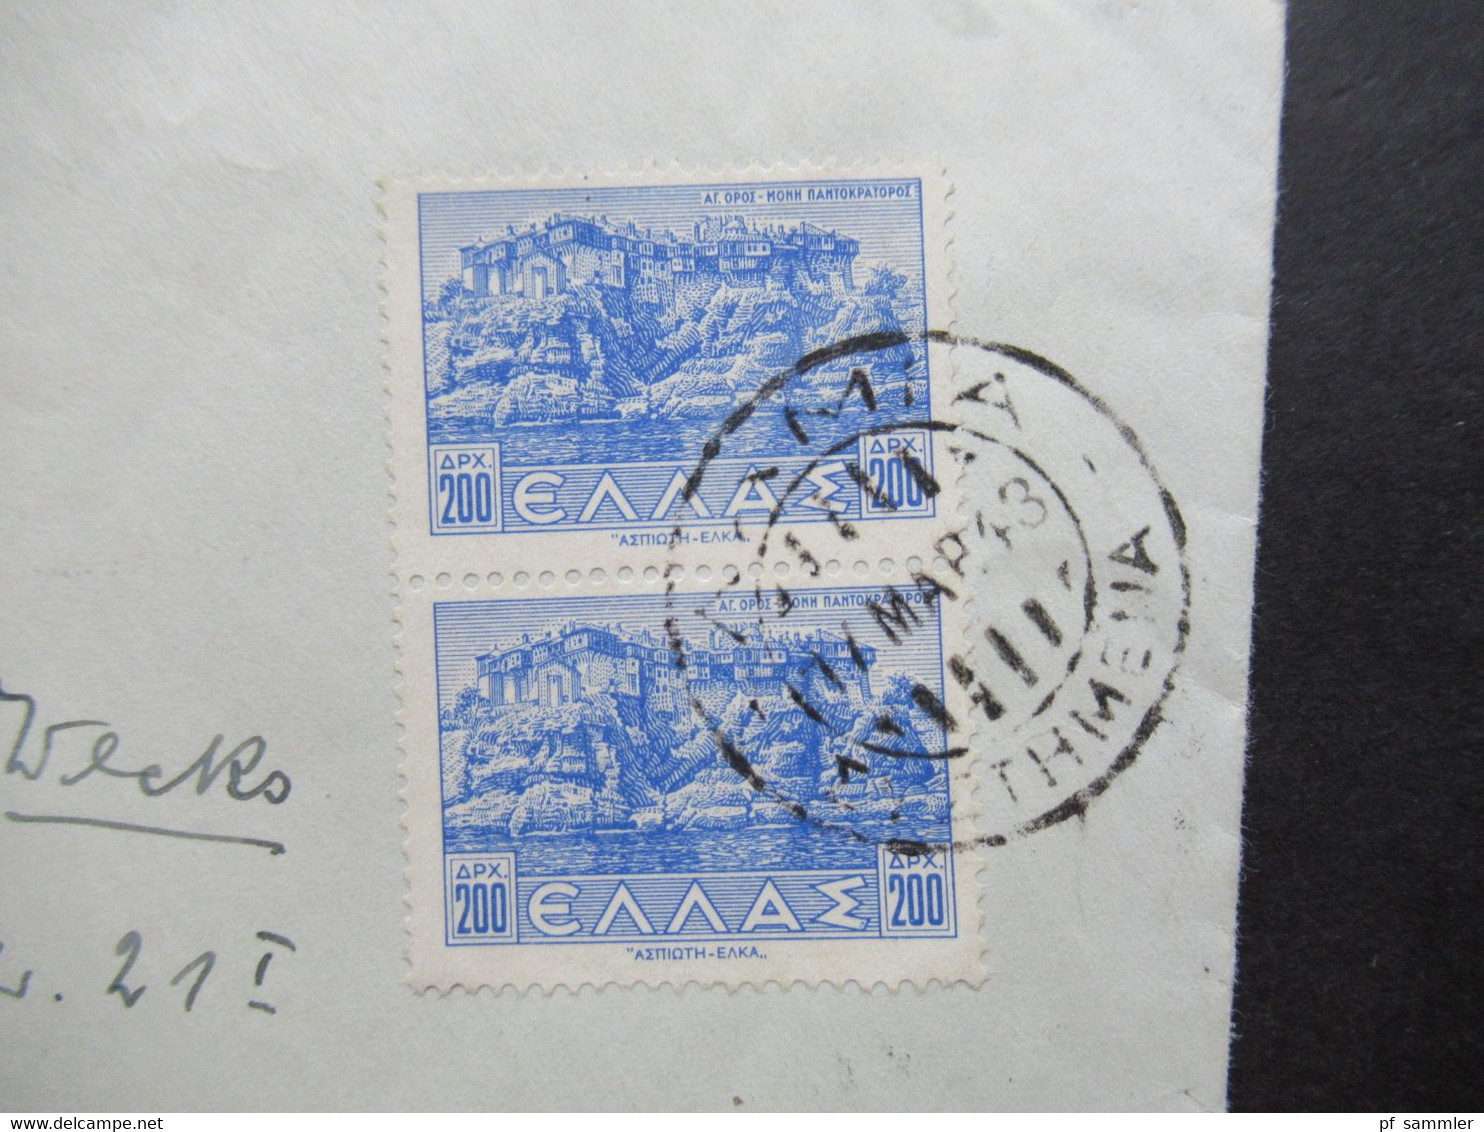 Griechenland 1943 Einschreiben Lamia - Wiesbaden Mit Mehrfachzensur OKW Und Comando Superiore Verificato Per Censura - Covers & Documents